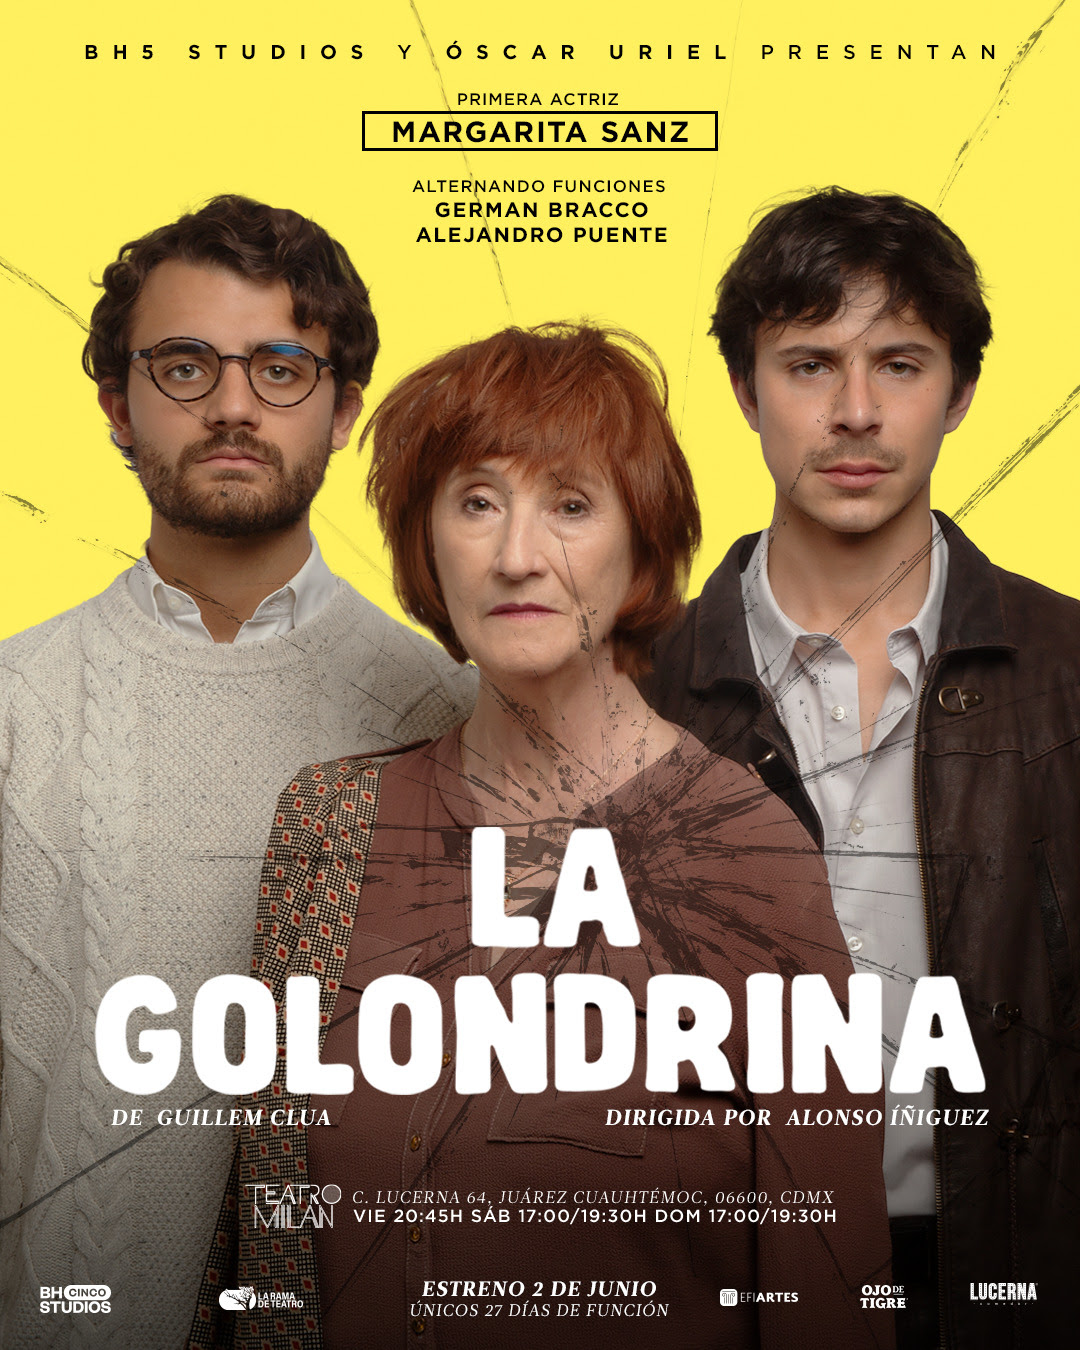 Margarita Sanz, Germán Bracco y Alejandro Puente en “La Golondrina”, producción de BH5 Studios y Óscar Uriel